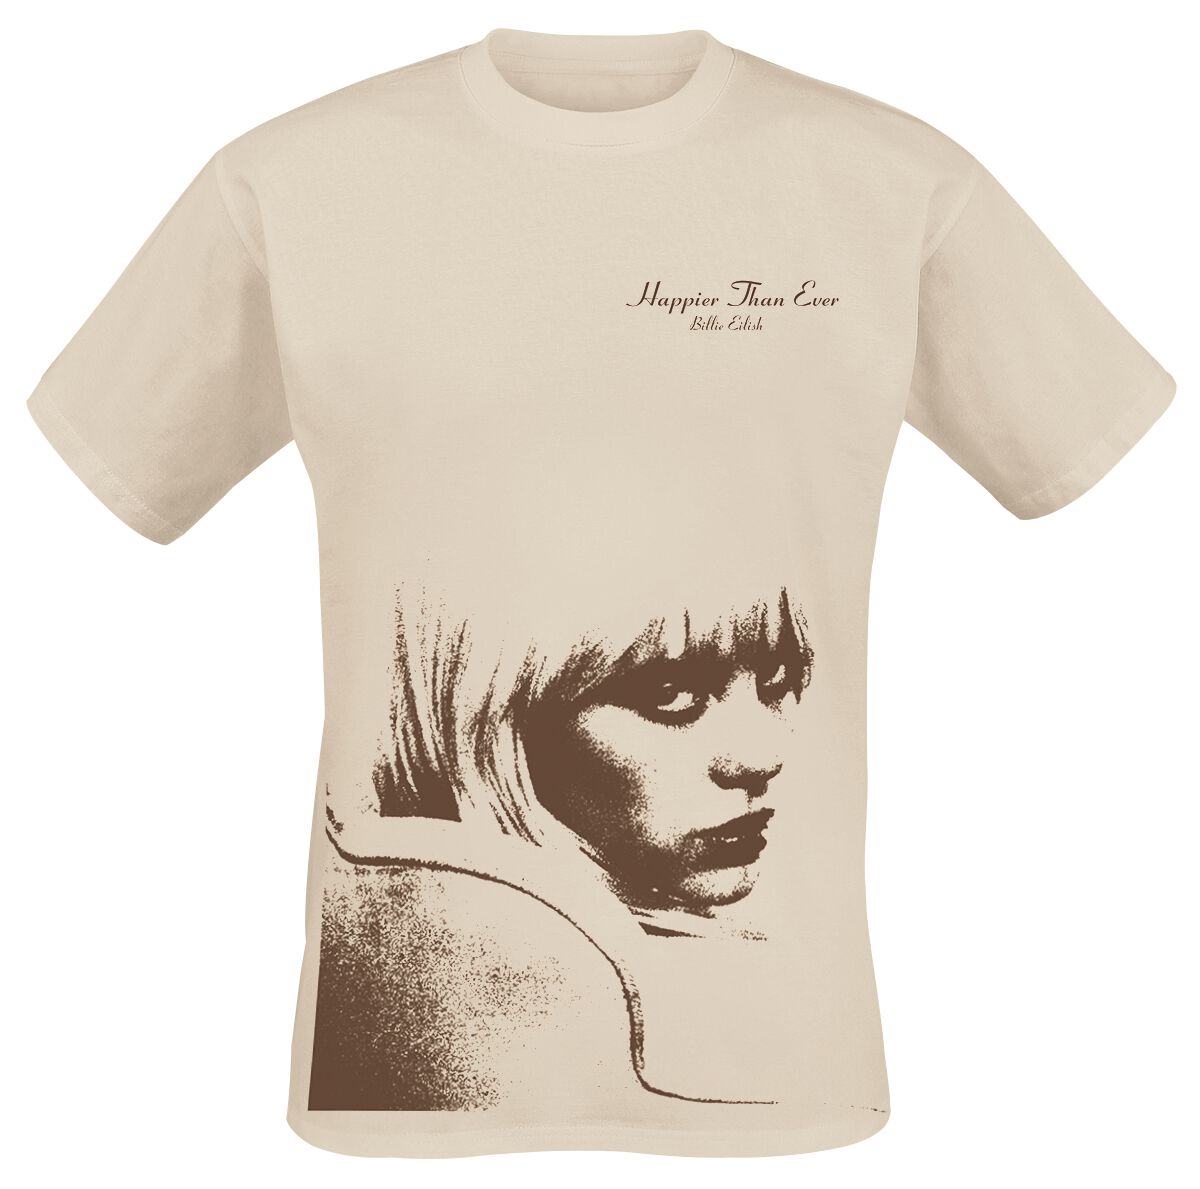 T-Shirt Manches courtes de Billie Eilish - Happier Than Ever - S à XXL - pour Homme - beige